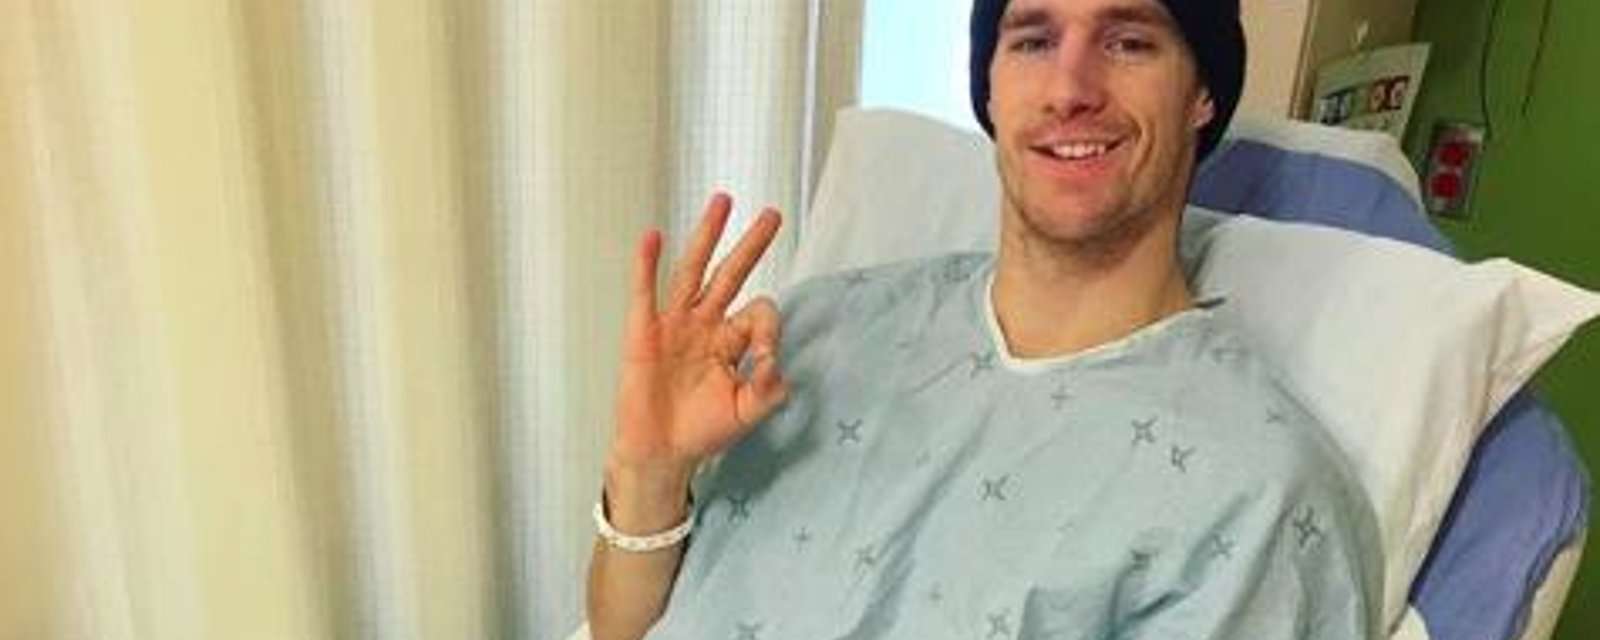 DERNIÈRE HEURE: Le médaillé olympique québécois Max Parrot est en rémission complète du cancer